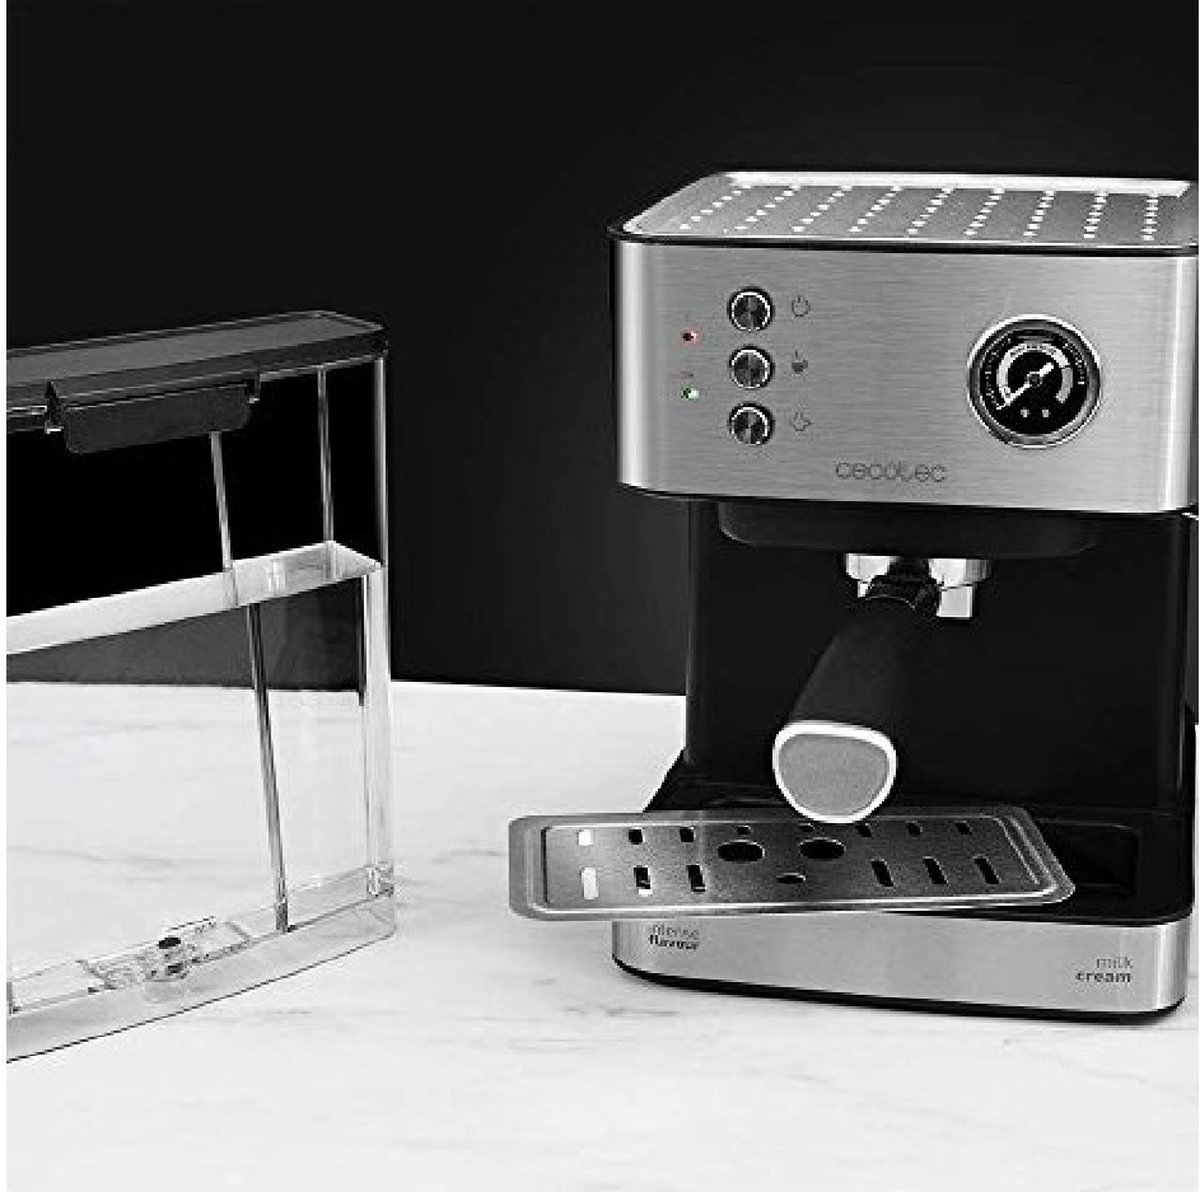 Cafetière Expresso Power Espresso 20 Cecotec (01503) - Kit-M